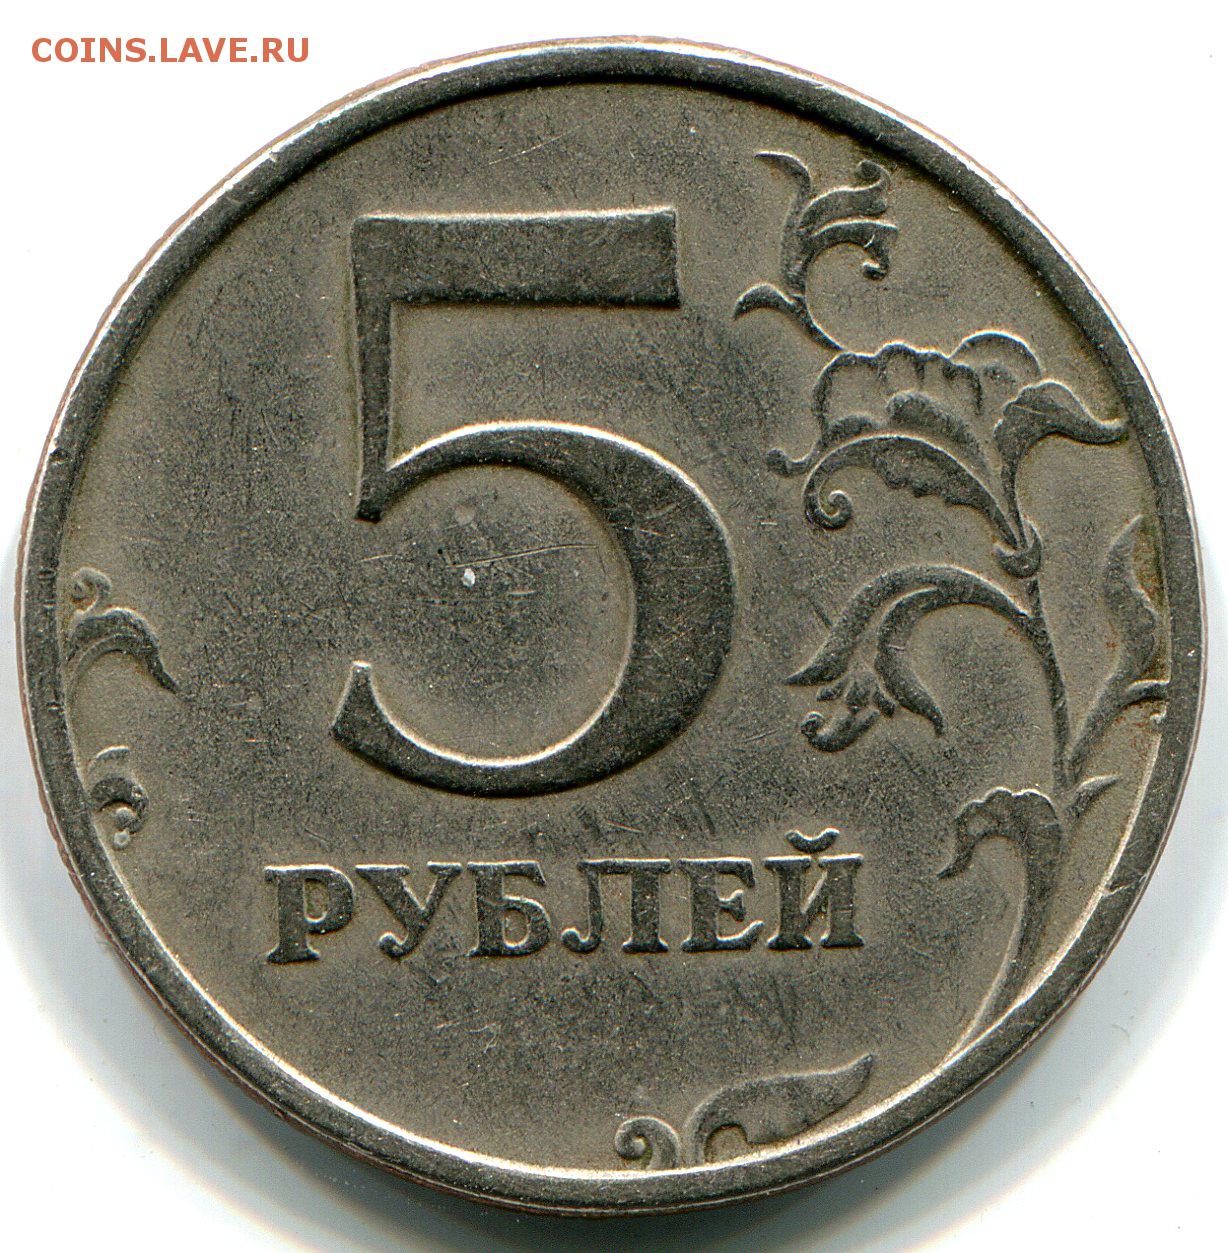 Россия 5 рублей 1997. Монеты 97 года.